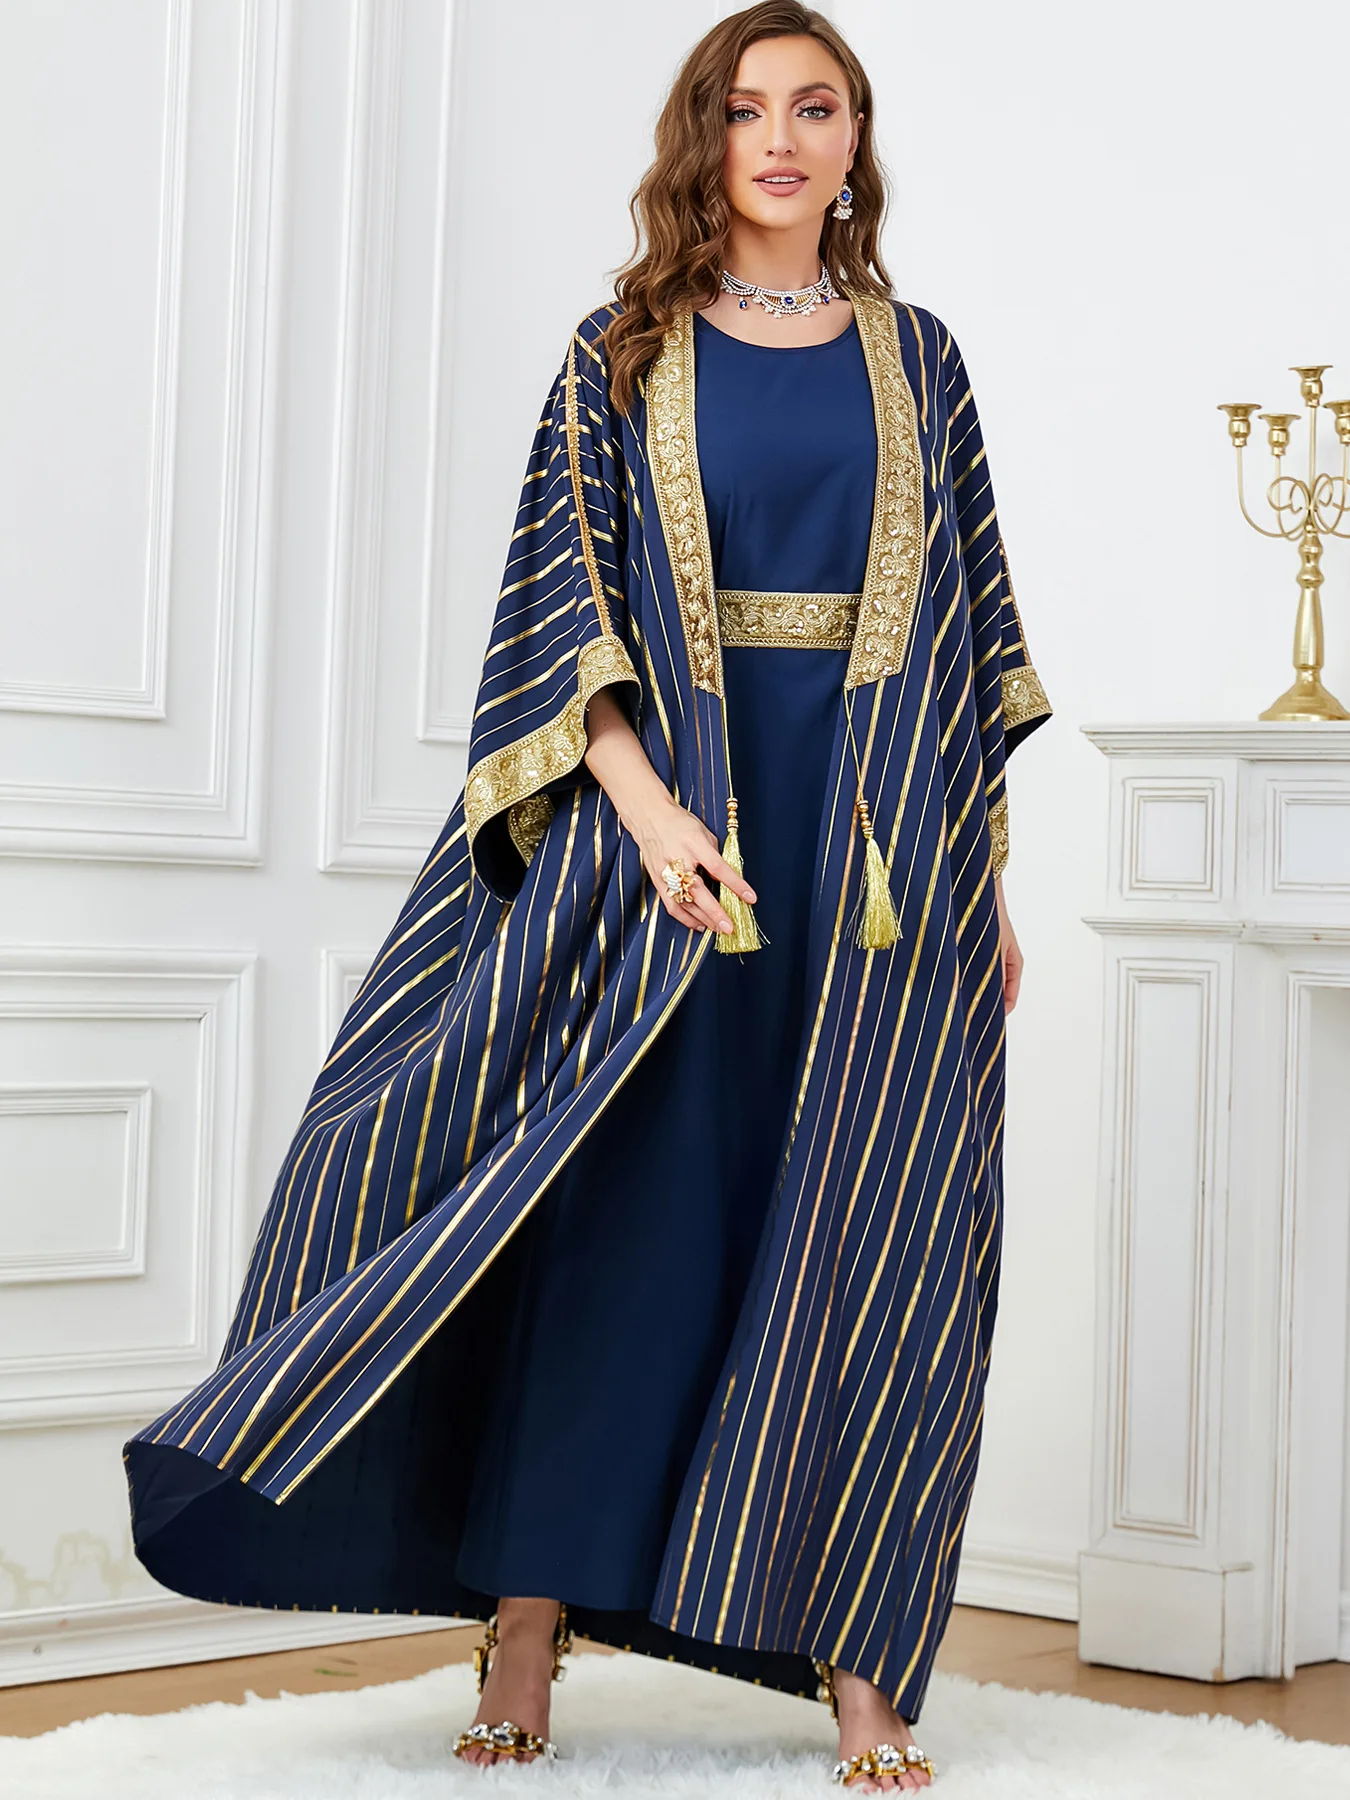 Update more than 112 saudi arabia dress for female best